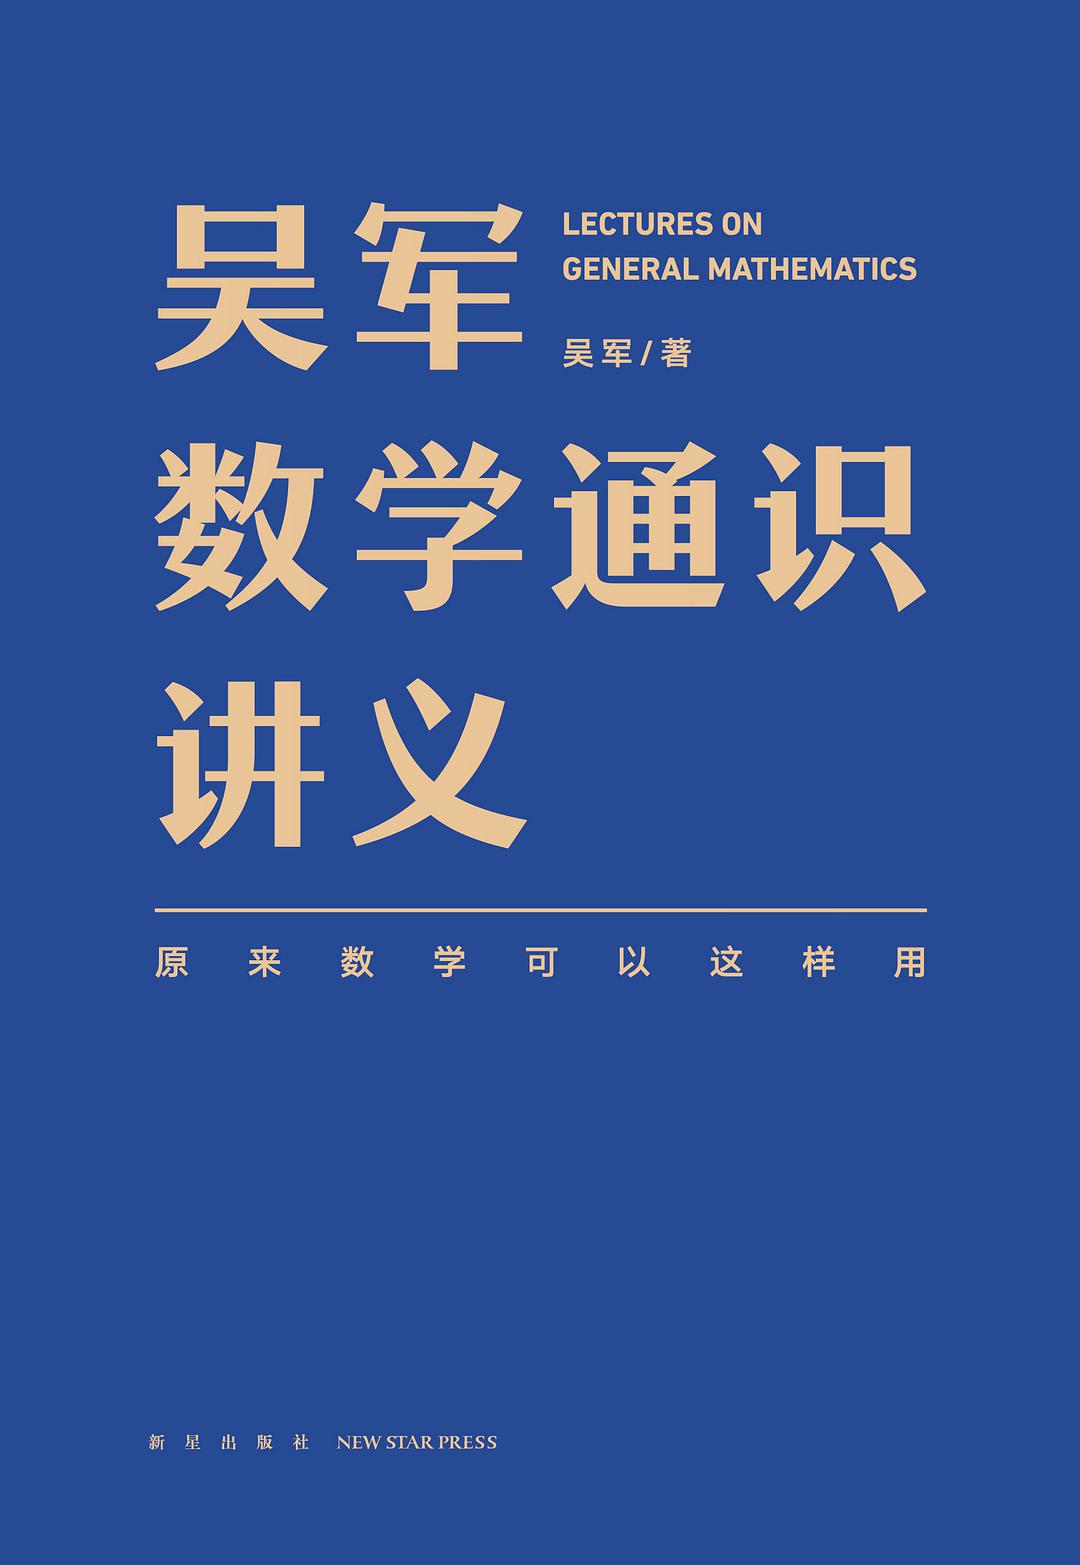 吴军数学通识讲义 (中文 language, 2021, 新星出版社)